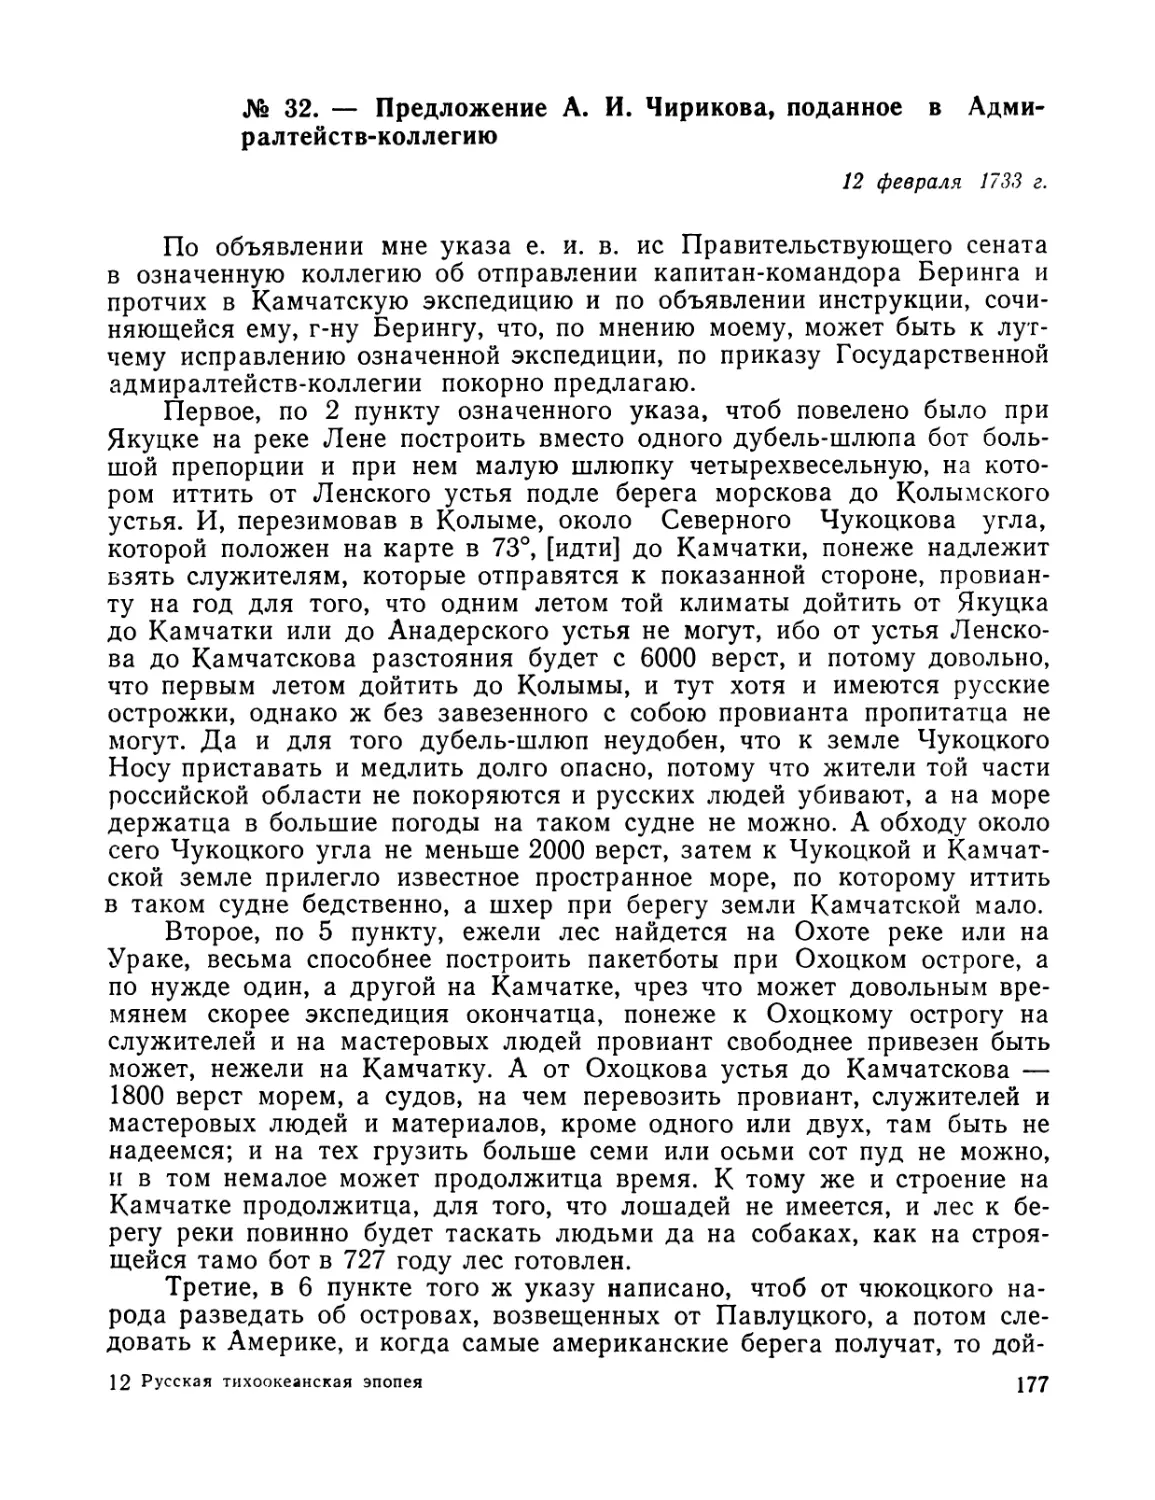 № 32. – Предложение А. И. Чирикова, поданное в Адмиралтейств-коллегию. 12 февраля 1733 г.